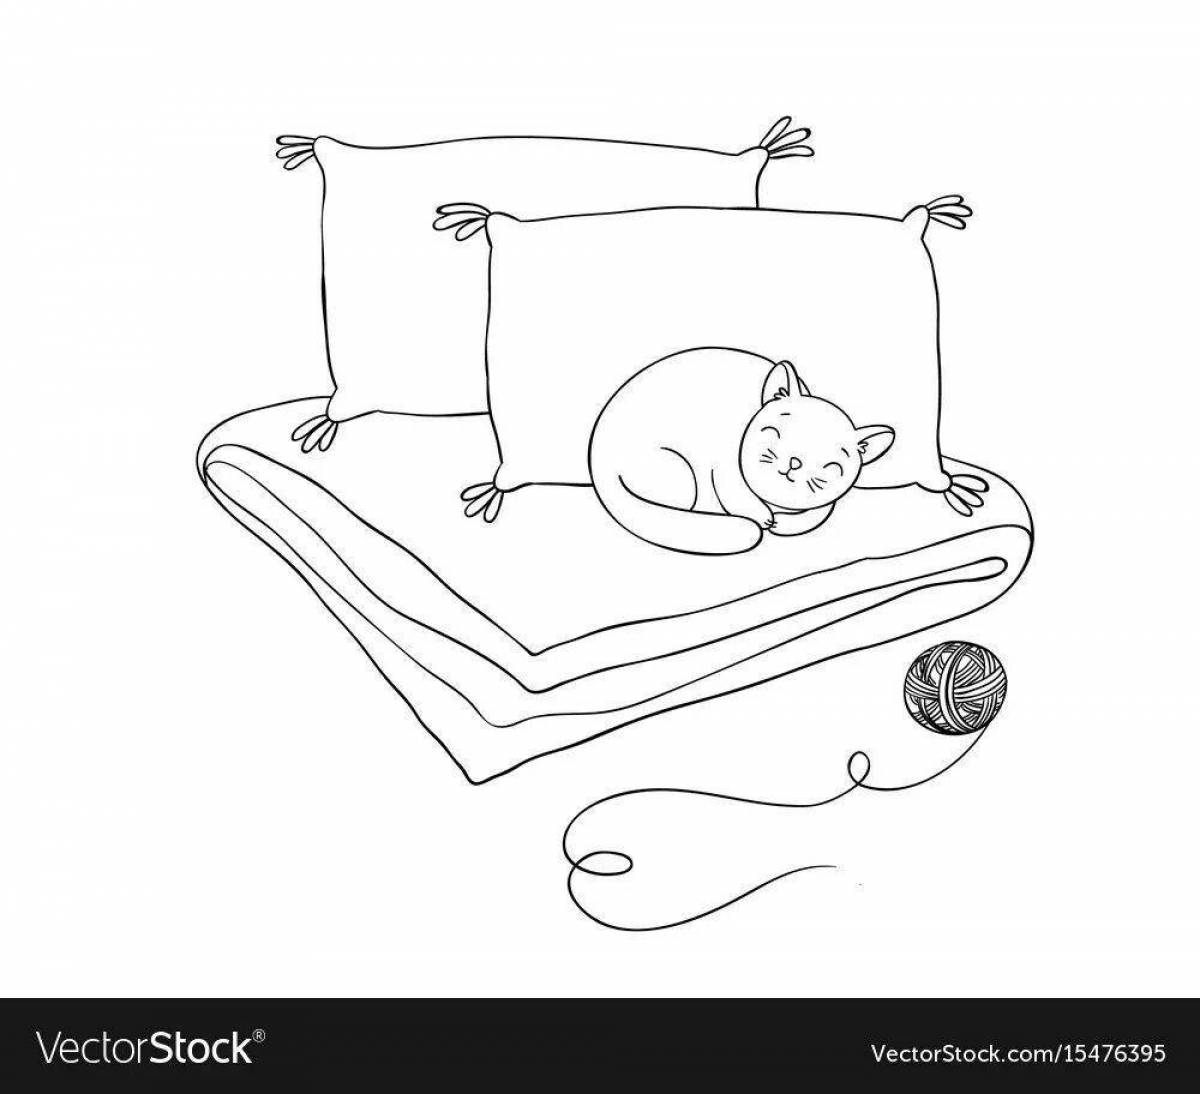 Одеяло и подушка с цветными иллюстрациями